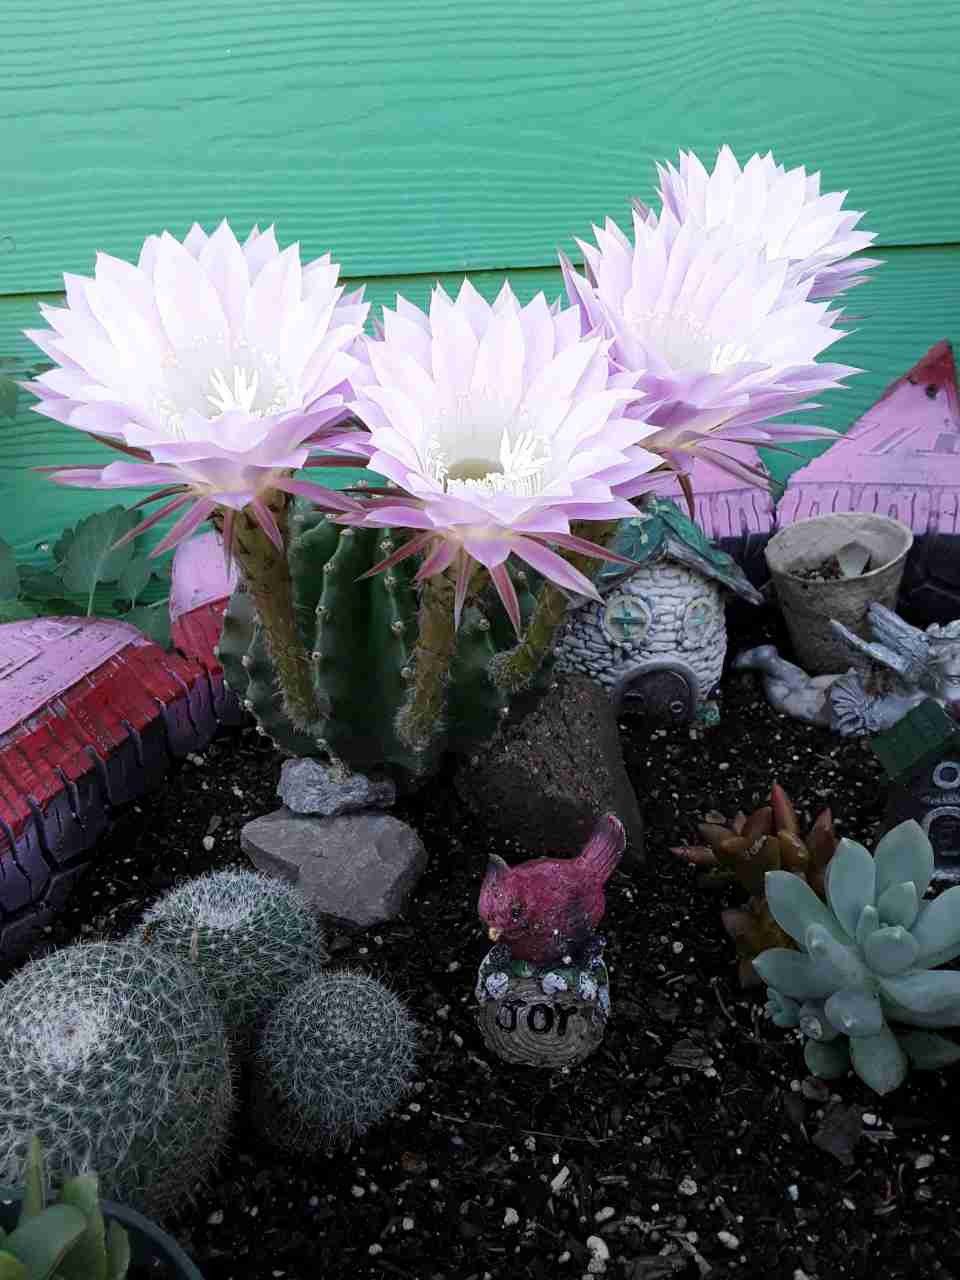 Cactus arcoiris 🌵solo 7 disponibles 🏃 se agotan☺por este año